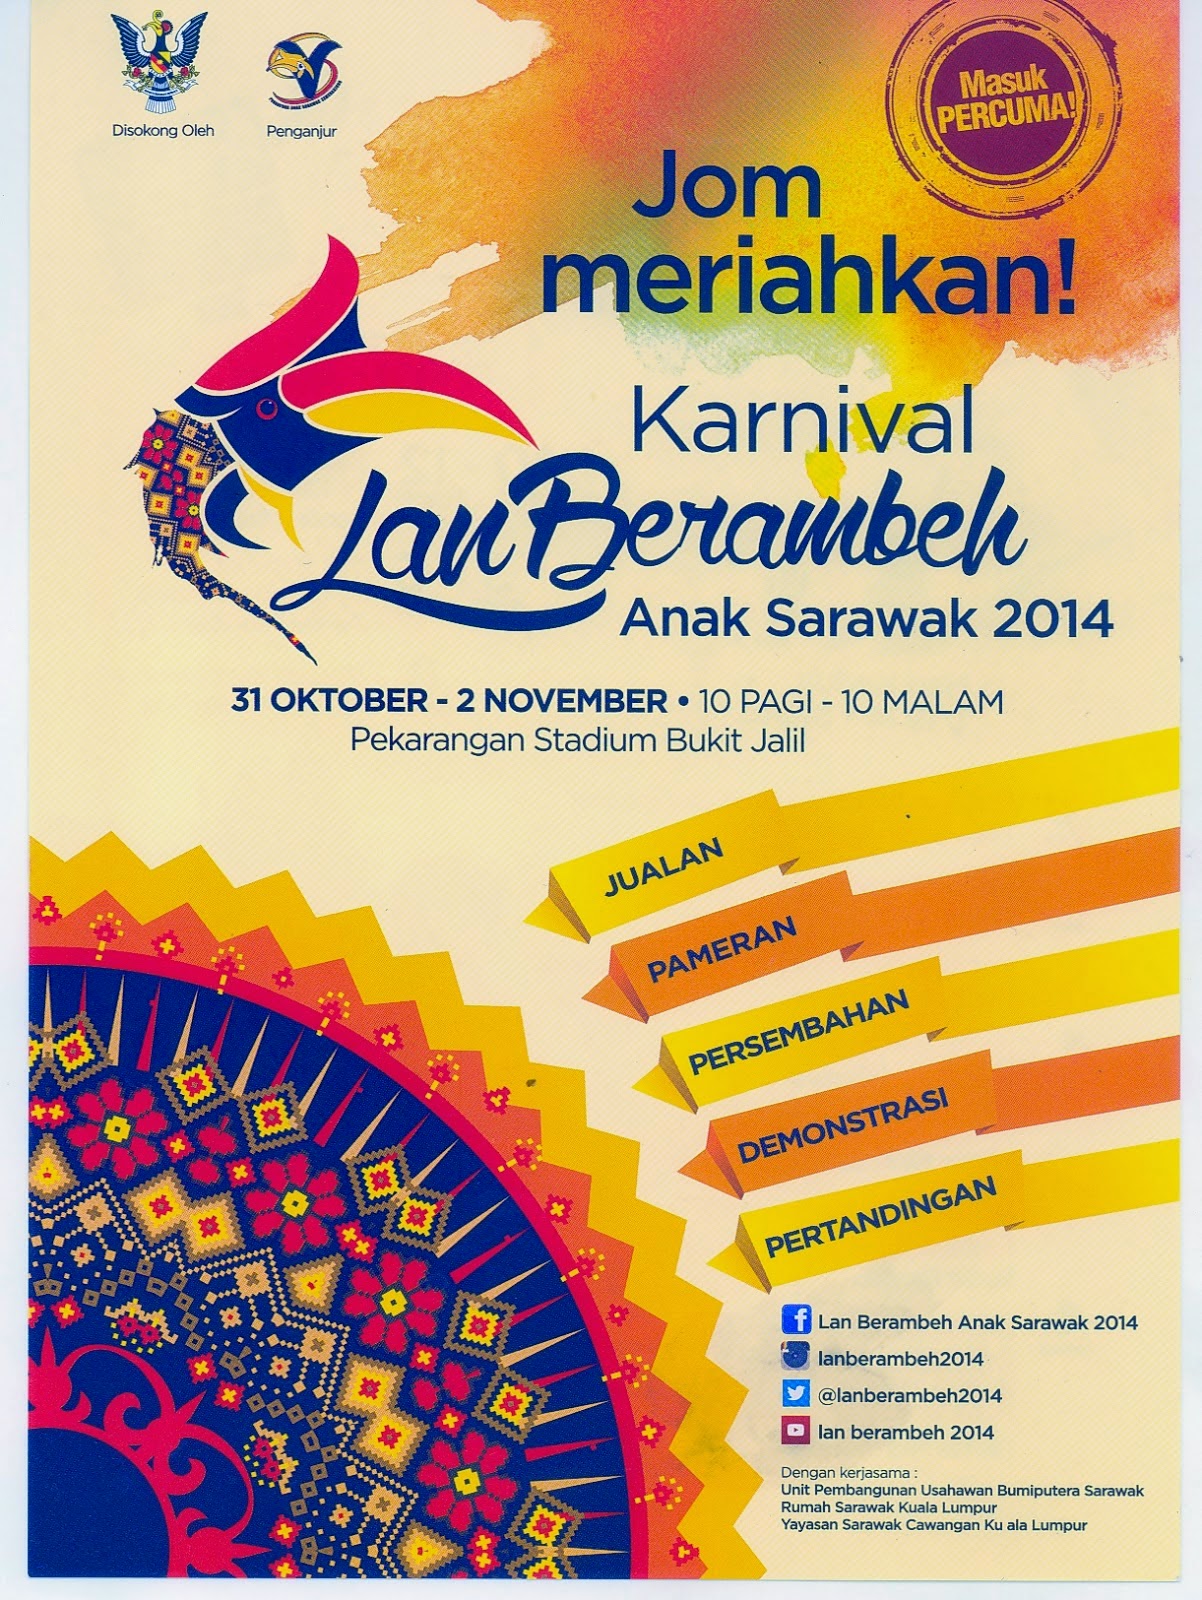 Karnival Lan Berambeh Anak Sarawak 2014